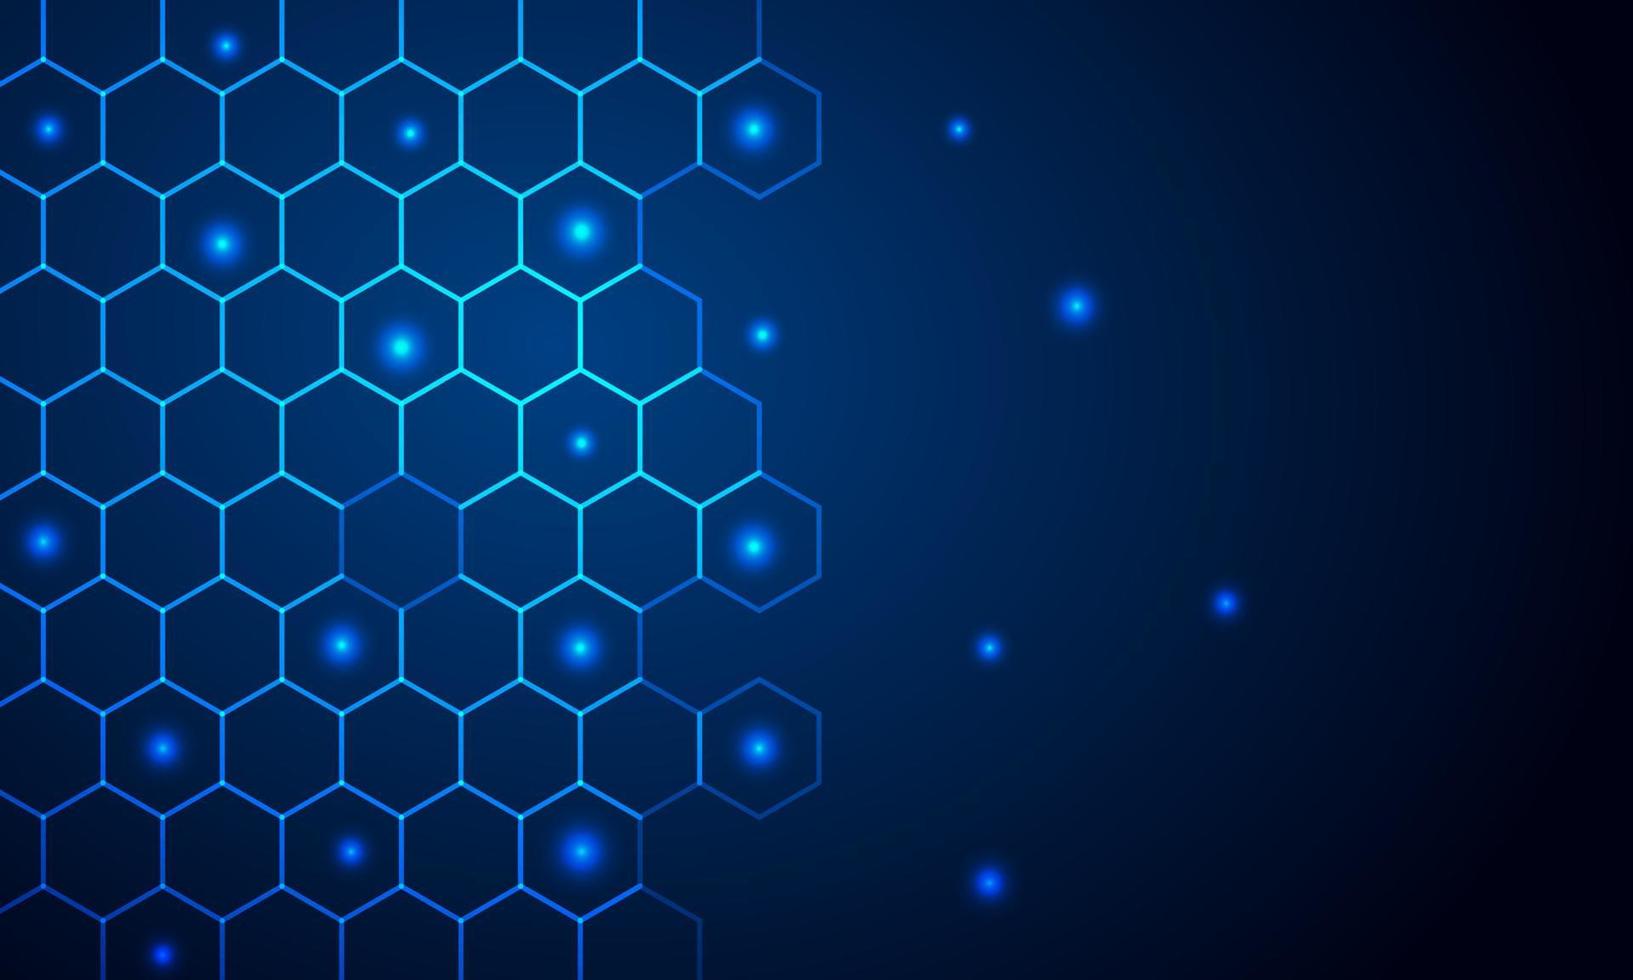 futurista abstrato - tecnologia de moléculas com formas poligonais em fundo azul escuro. ilustração vetorial design conceito de tecnologia digital. vetor